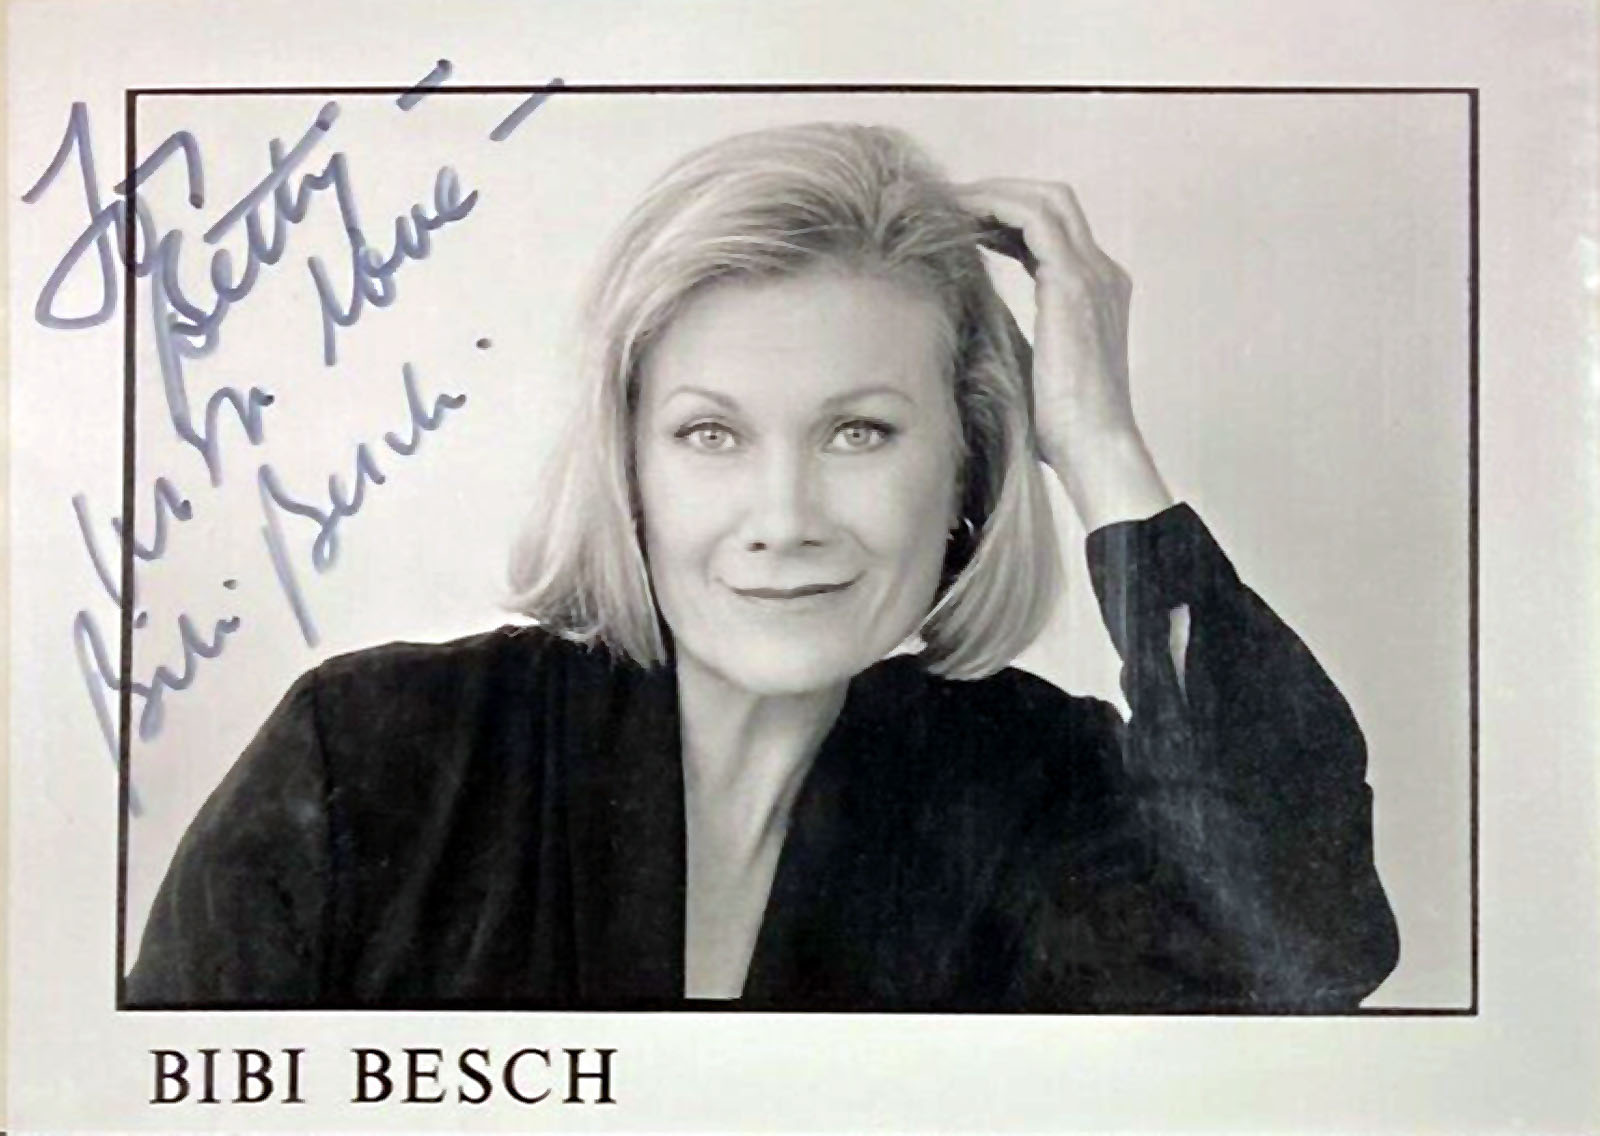 Bibi Besch